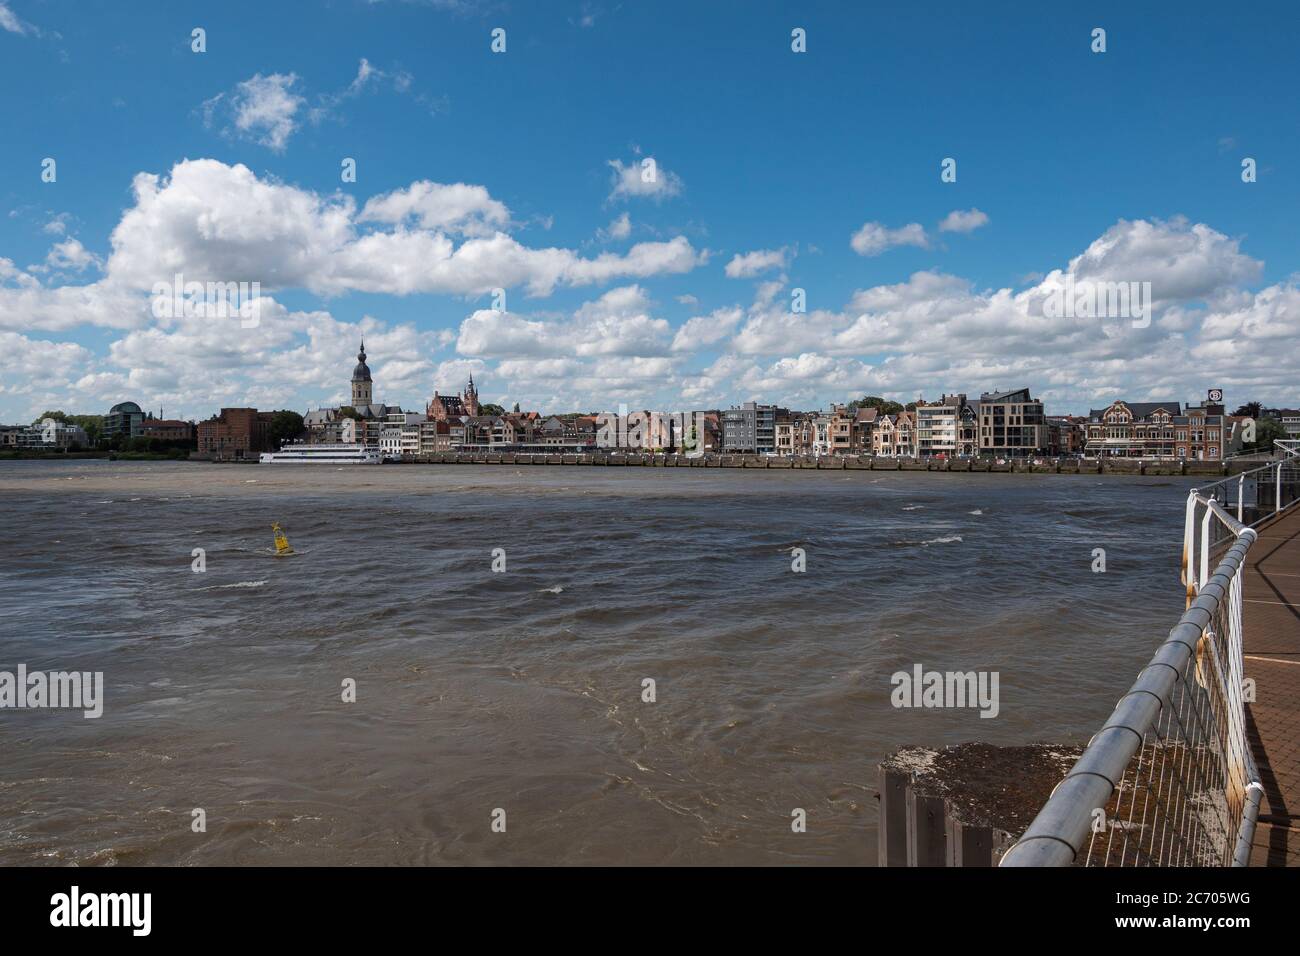 Temse, Belgique, paysage urbain depuis le pont de Temse avec un beau ciel nuageux Banque D'Images